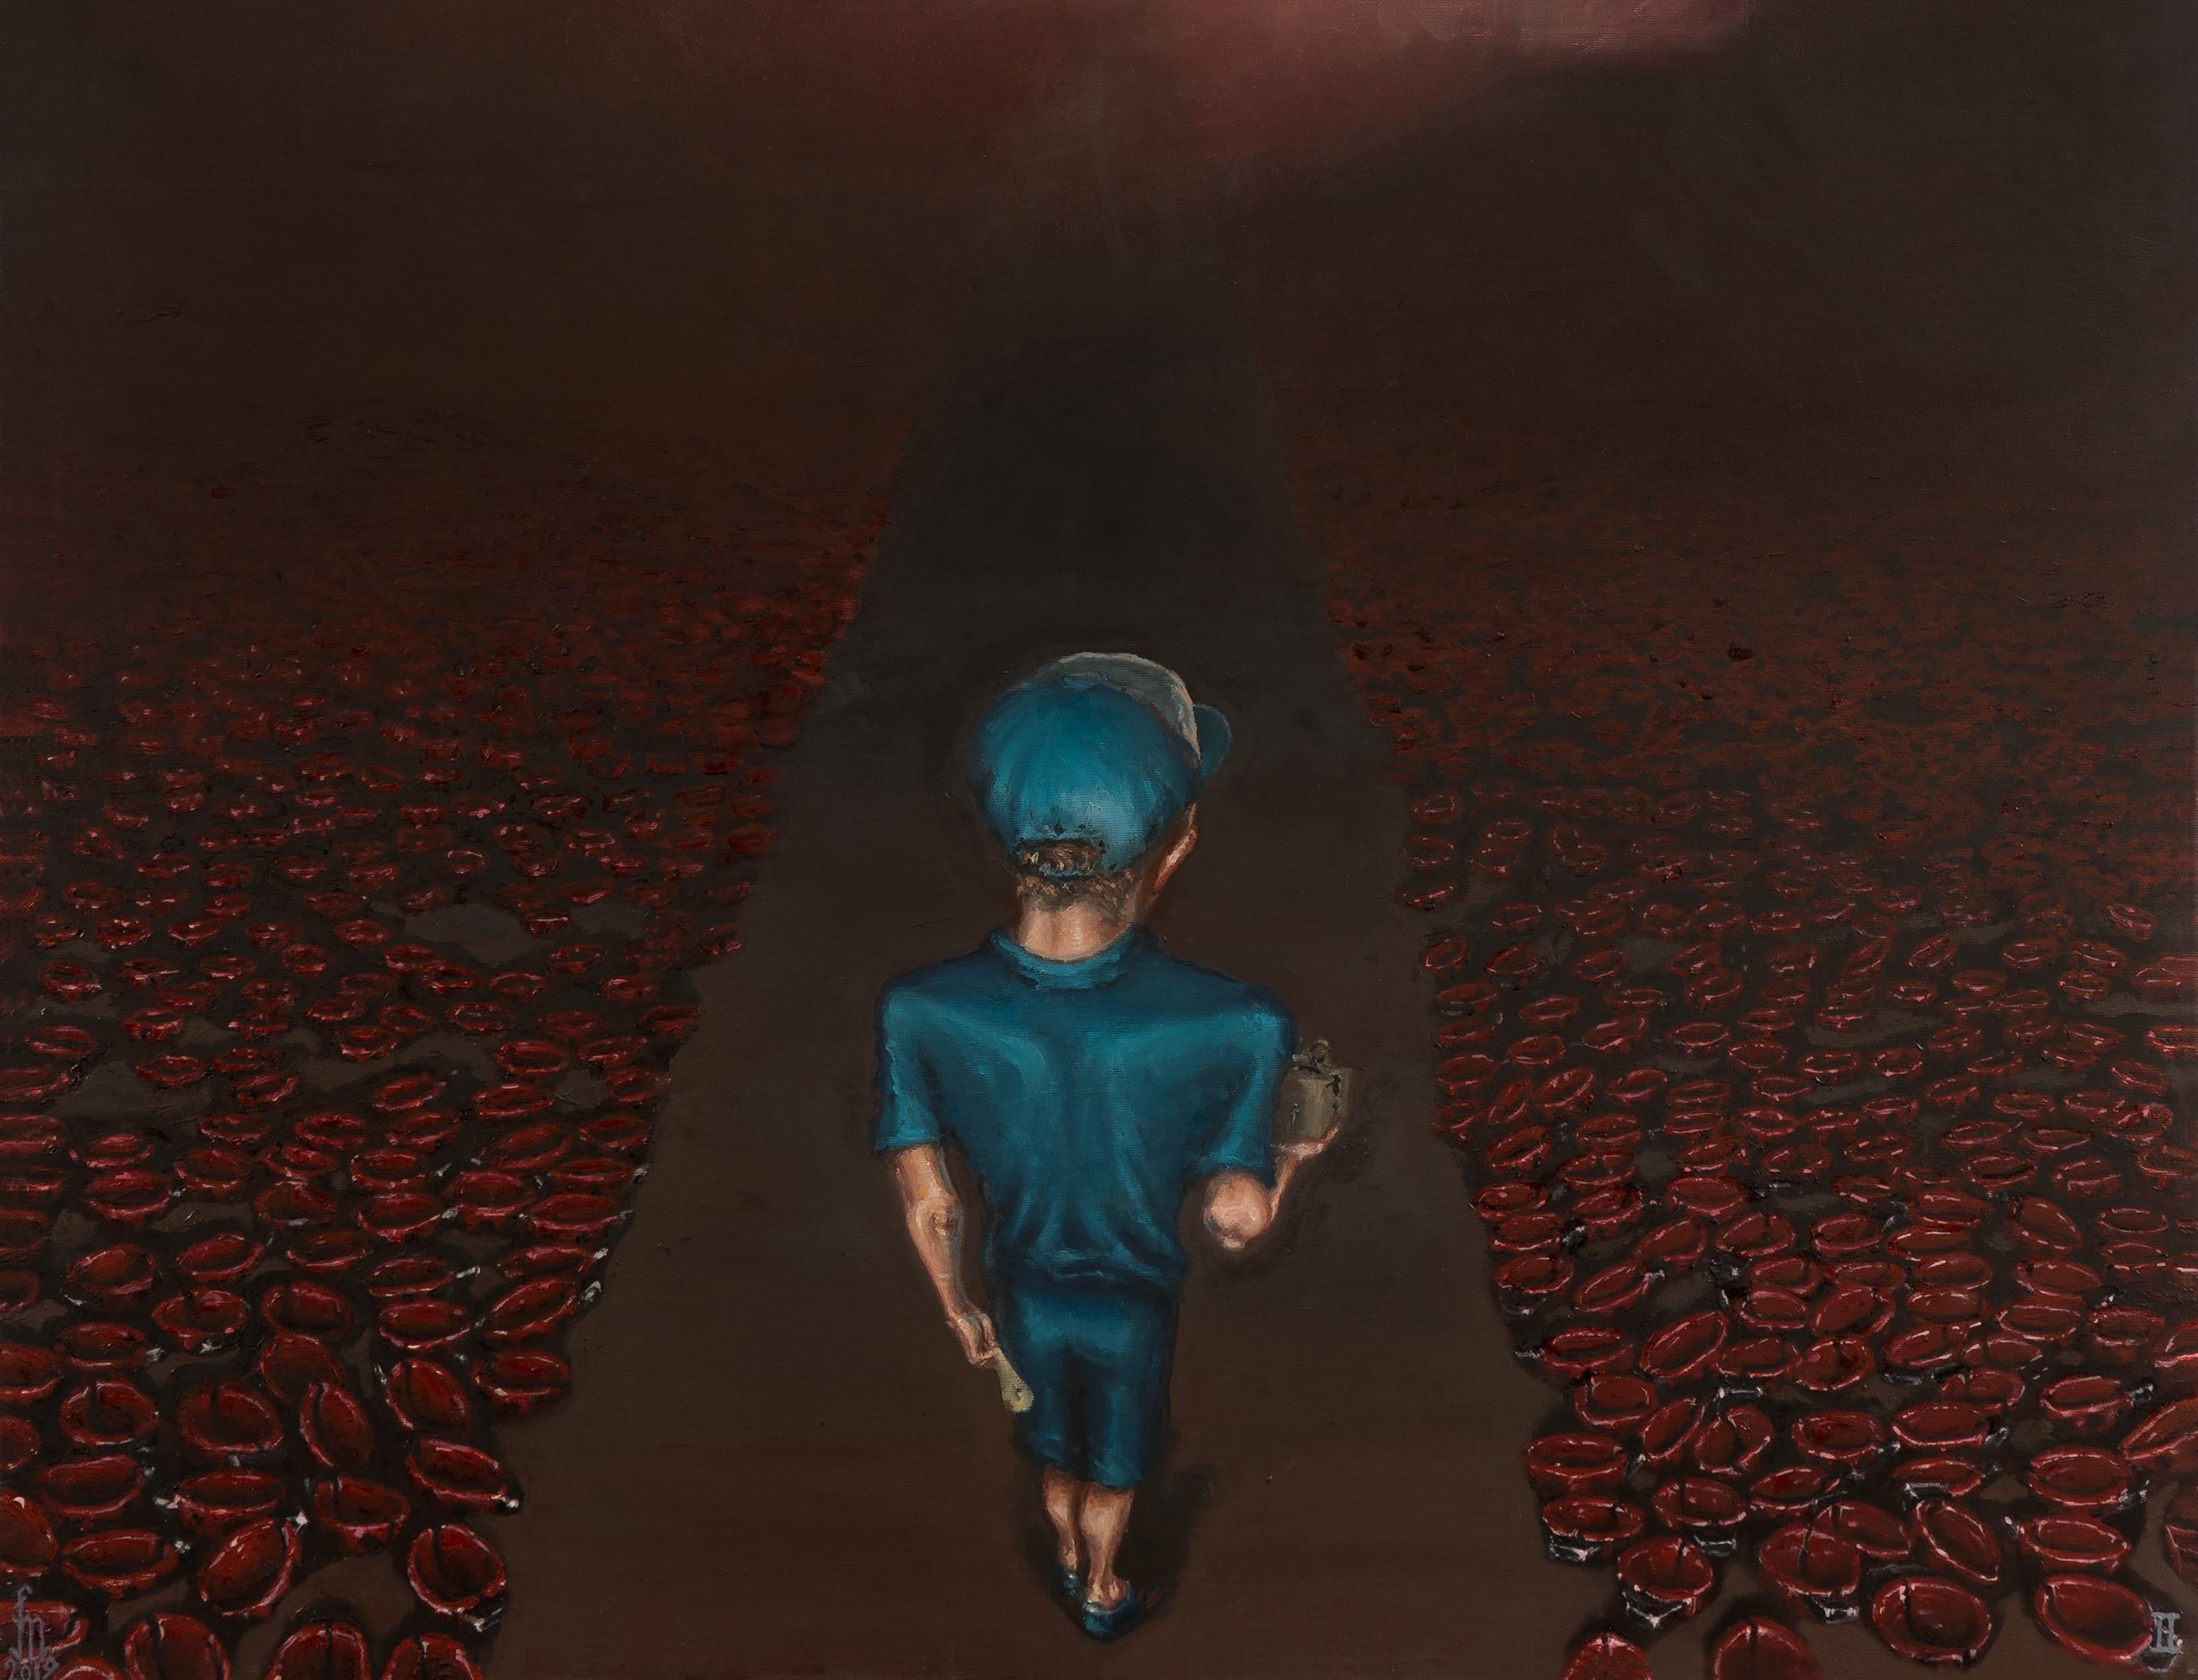 The Straight Path - Zeitgenössisch, Kind, Blau, Mystery, Ladybug, Rot, Braun (Schwarz), Landscape Painting, von Mihai Florea